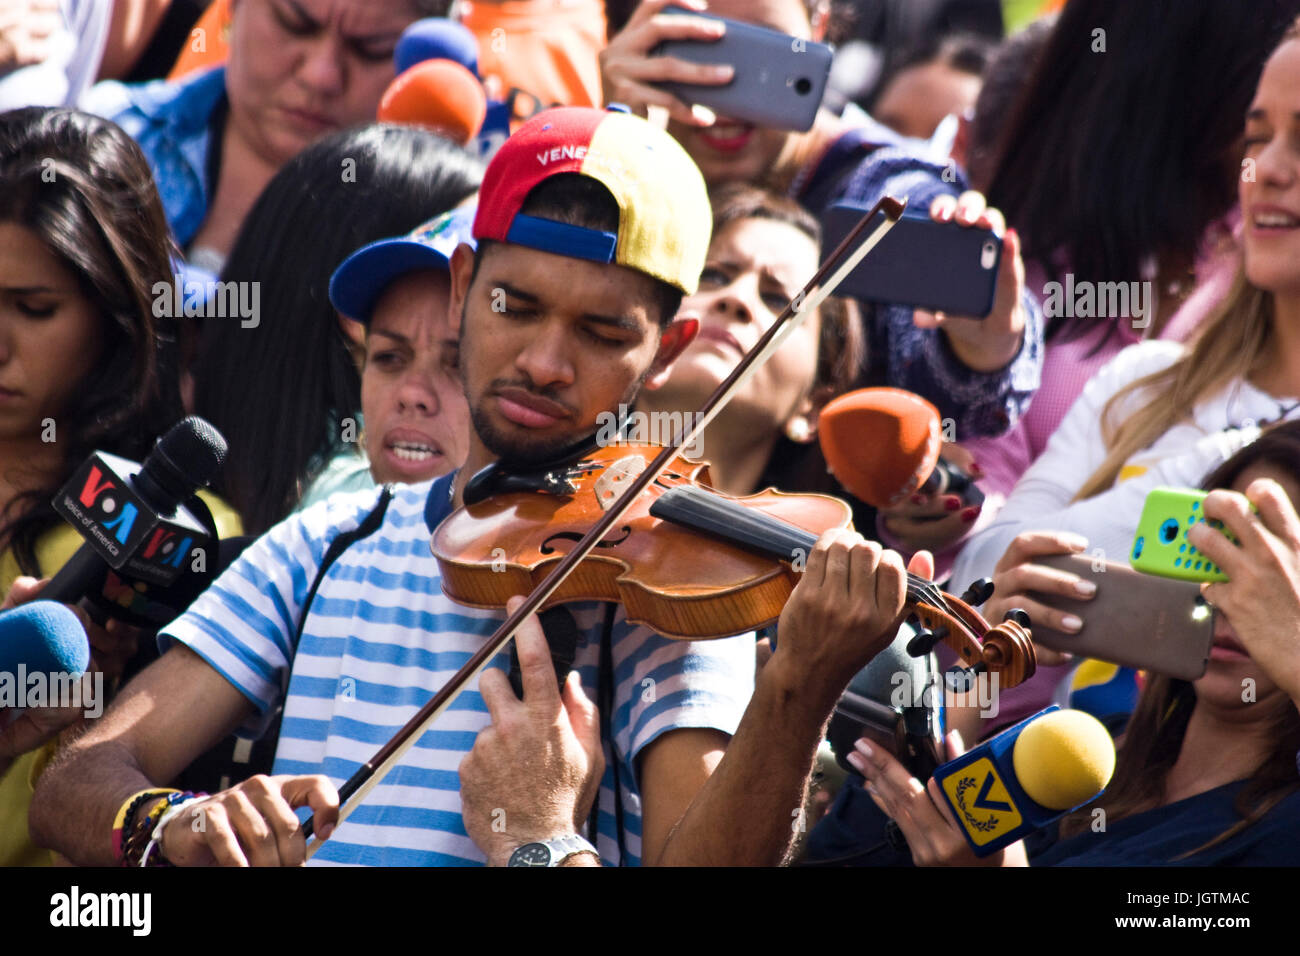 Wuilly arteaga suona il violino durante un raduno politico contro il governo di Nicolás Maduro. Foto Stock